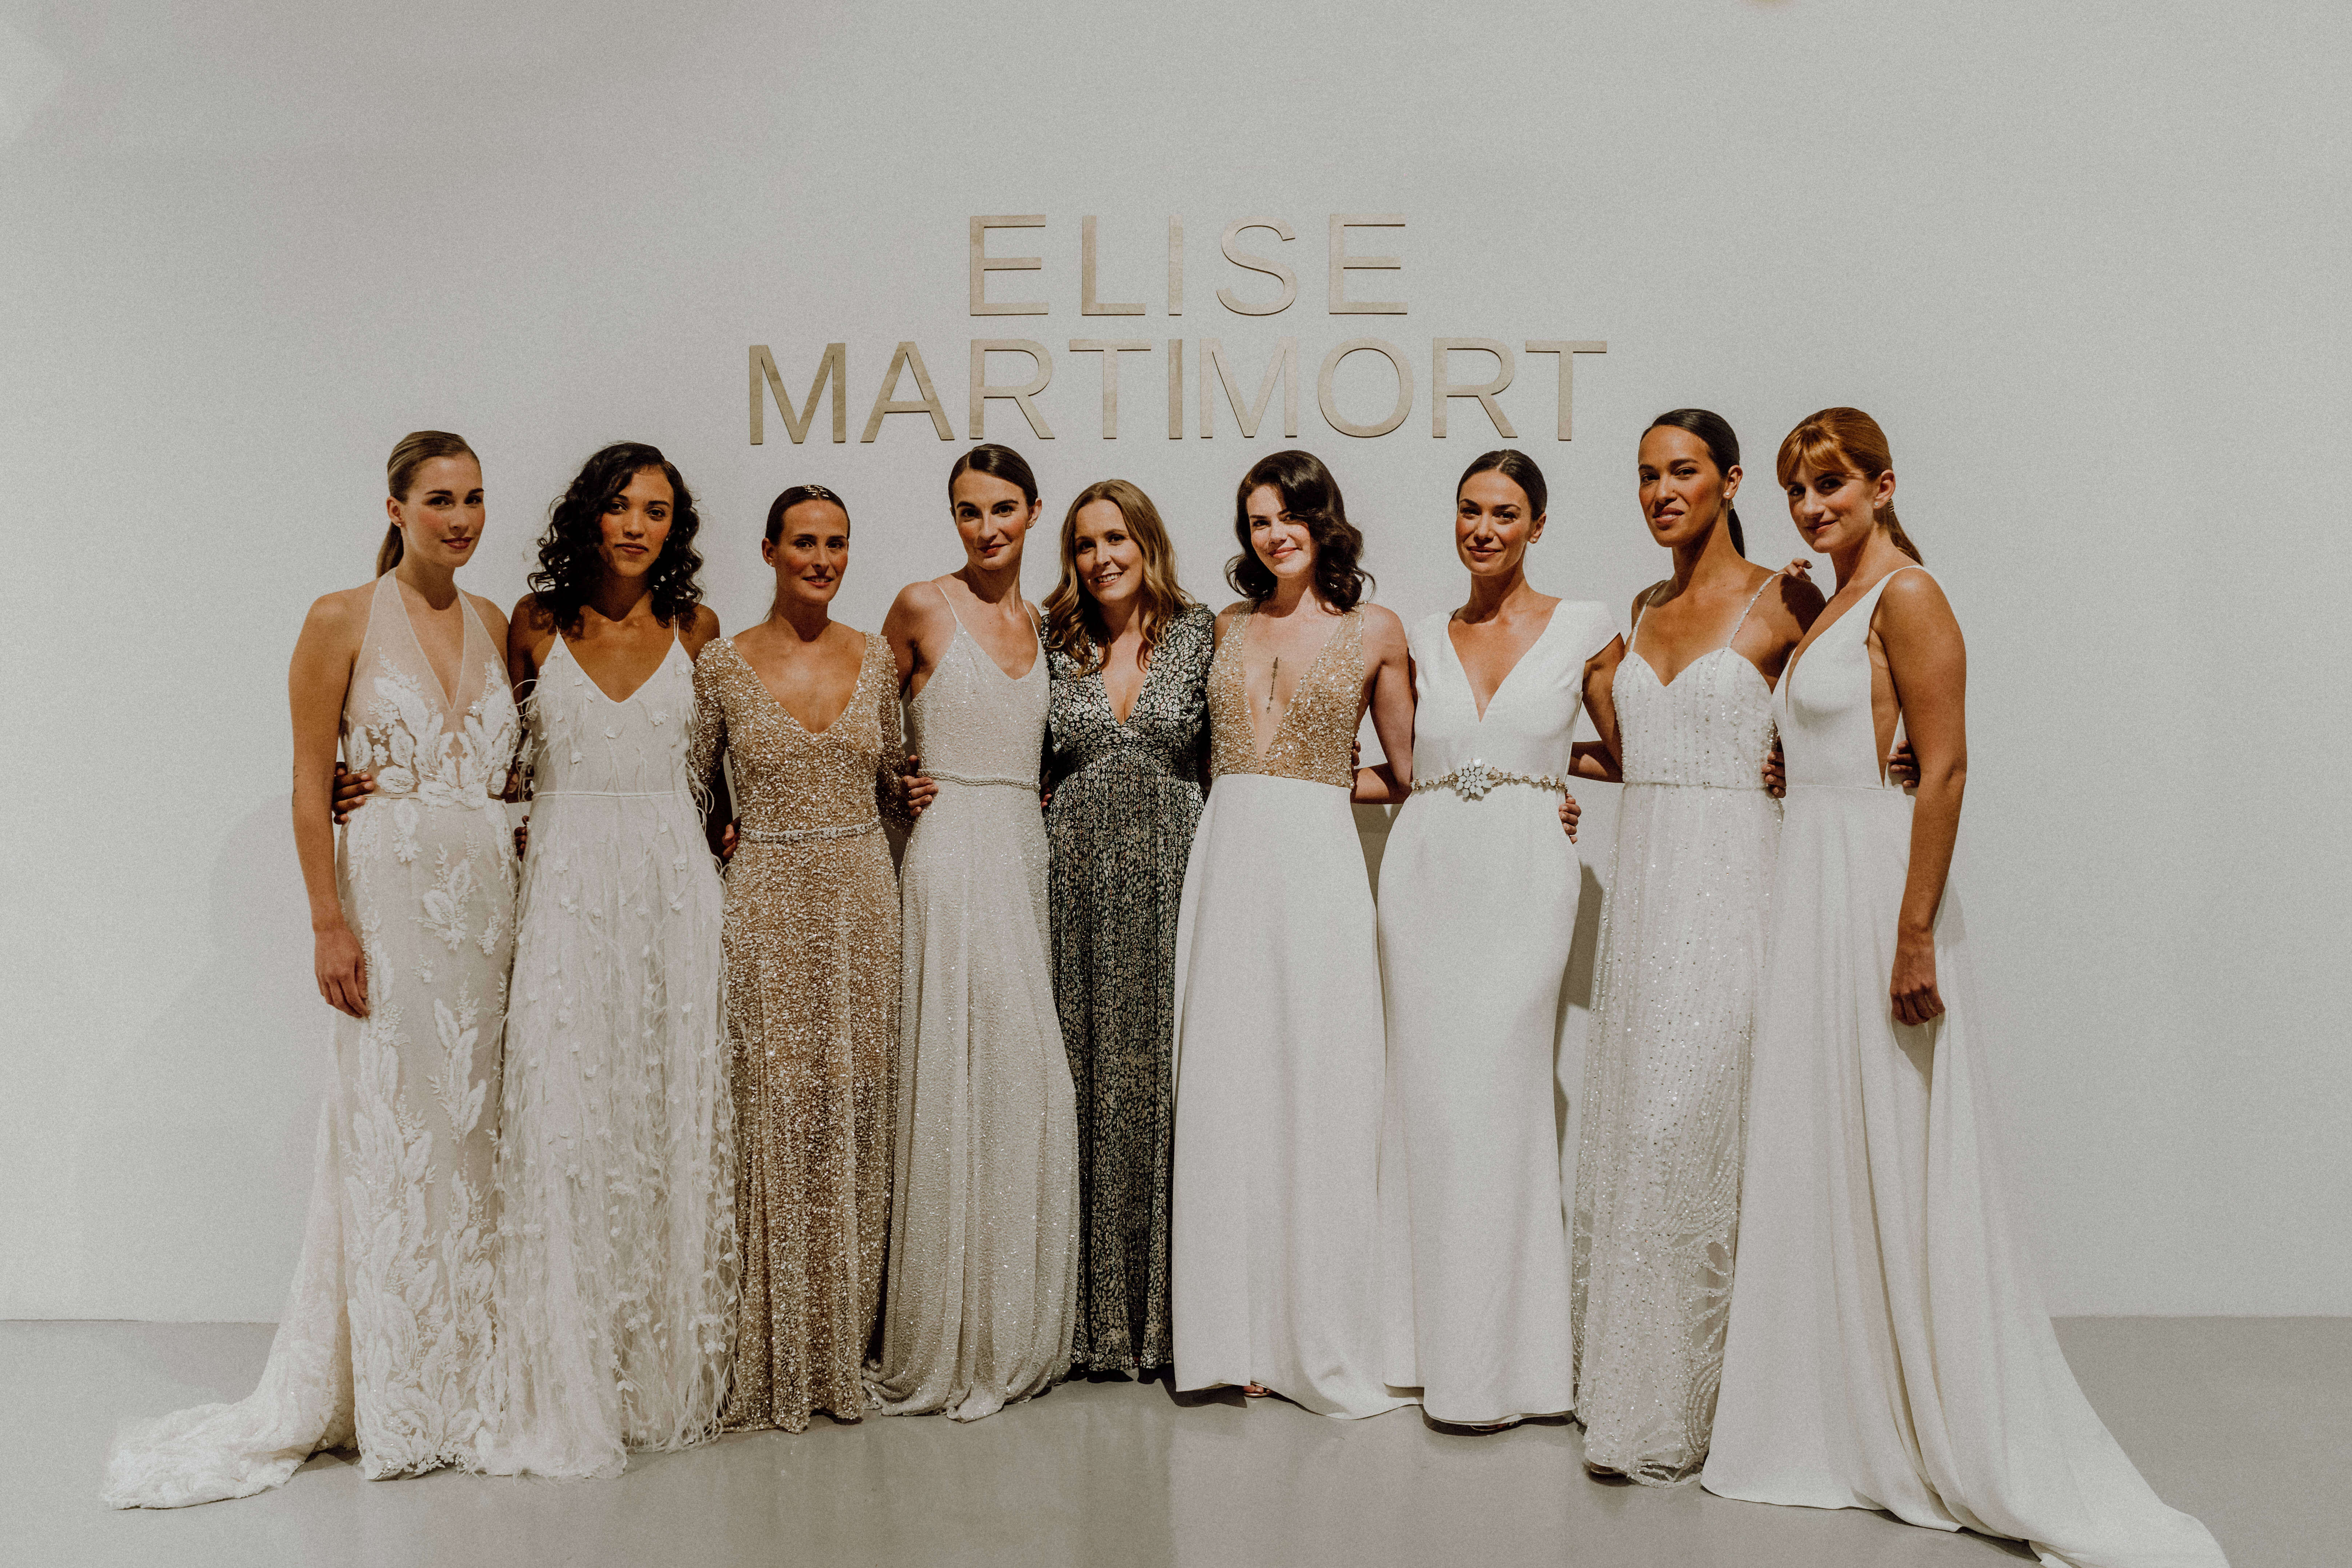 Au Roi galerie défilé Elise Martimort fashion week